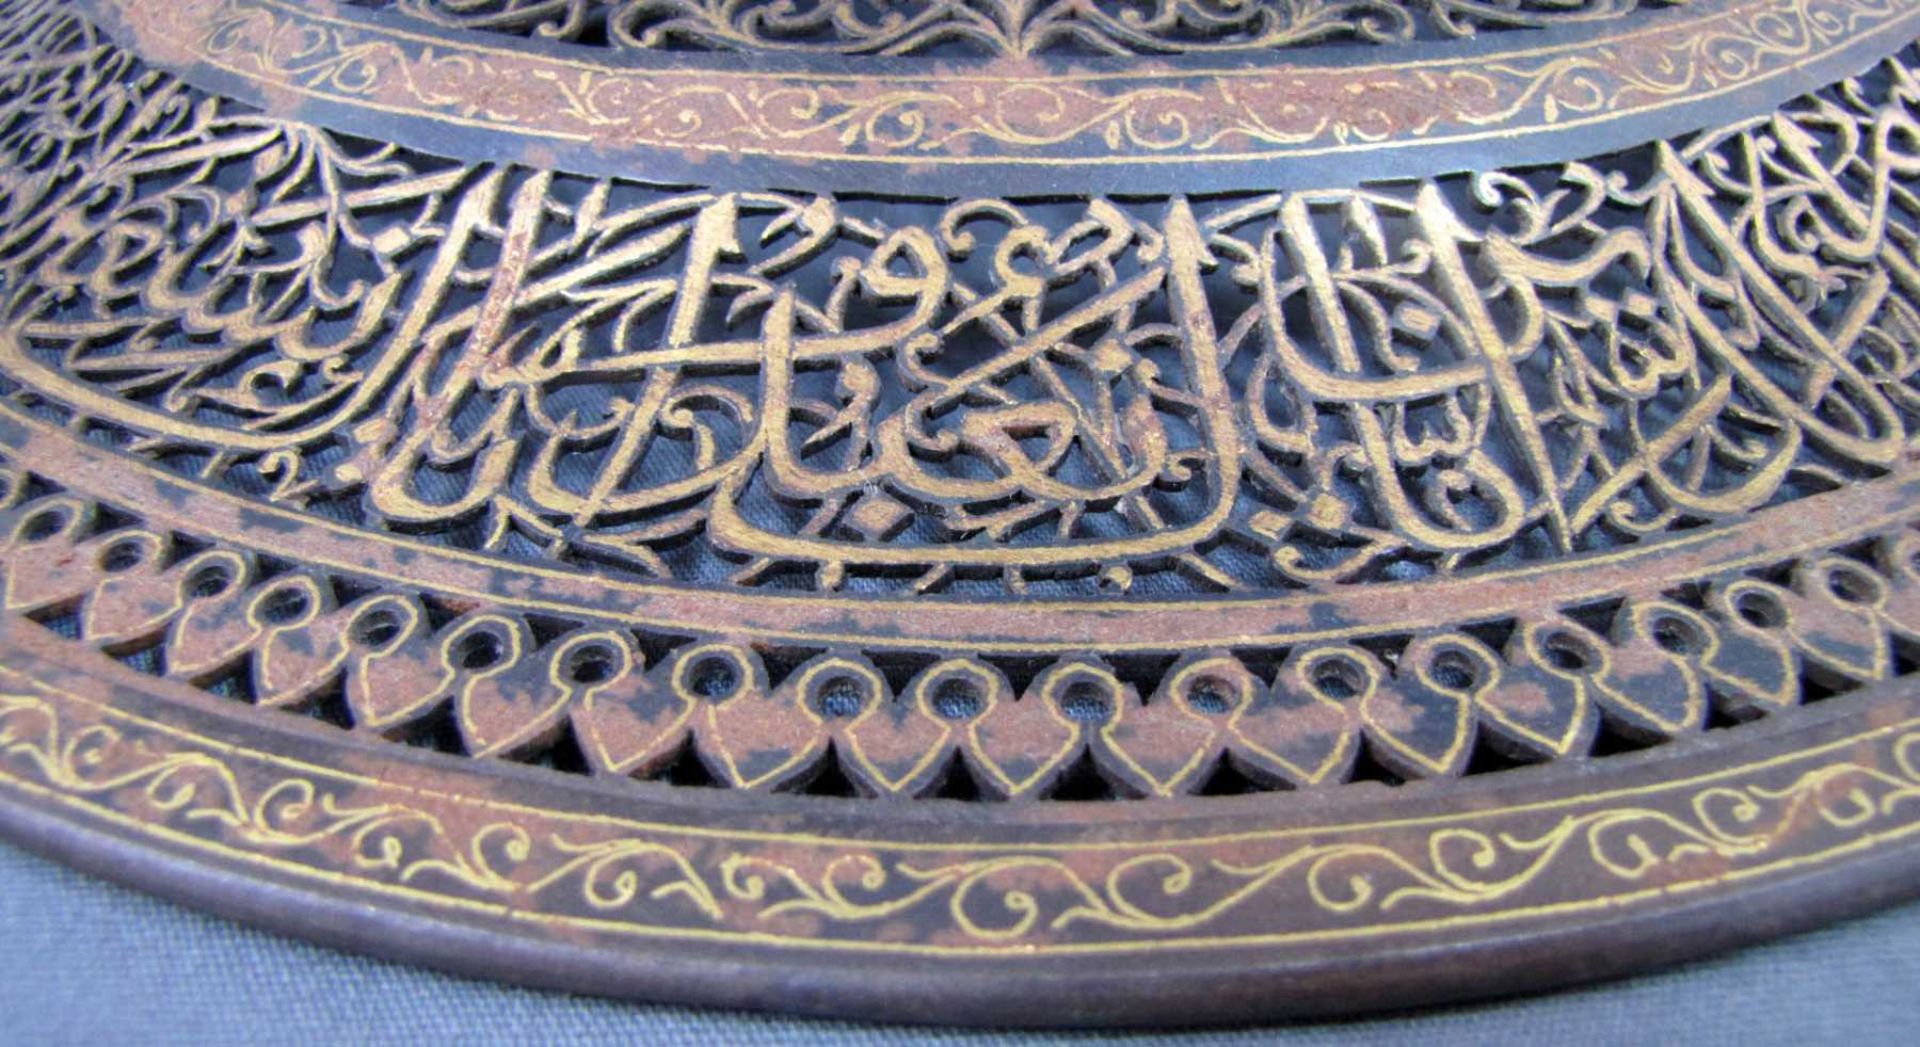 Schild mit Tughra eines Sultans, wohl Osmanisches Reich 18. Jahrhundert. Durchmesser 38 cm. Stahl, - Bild 8 aus 8